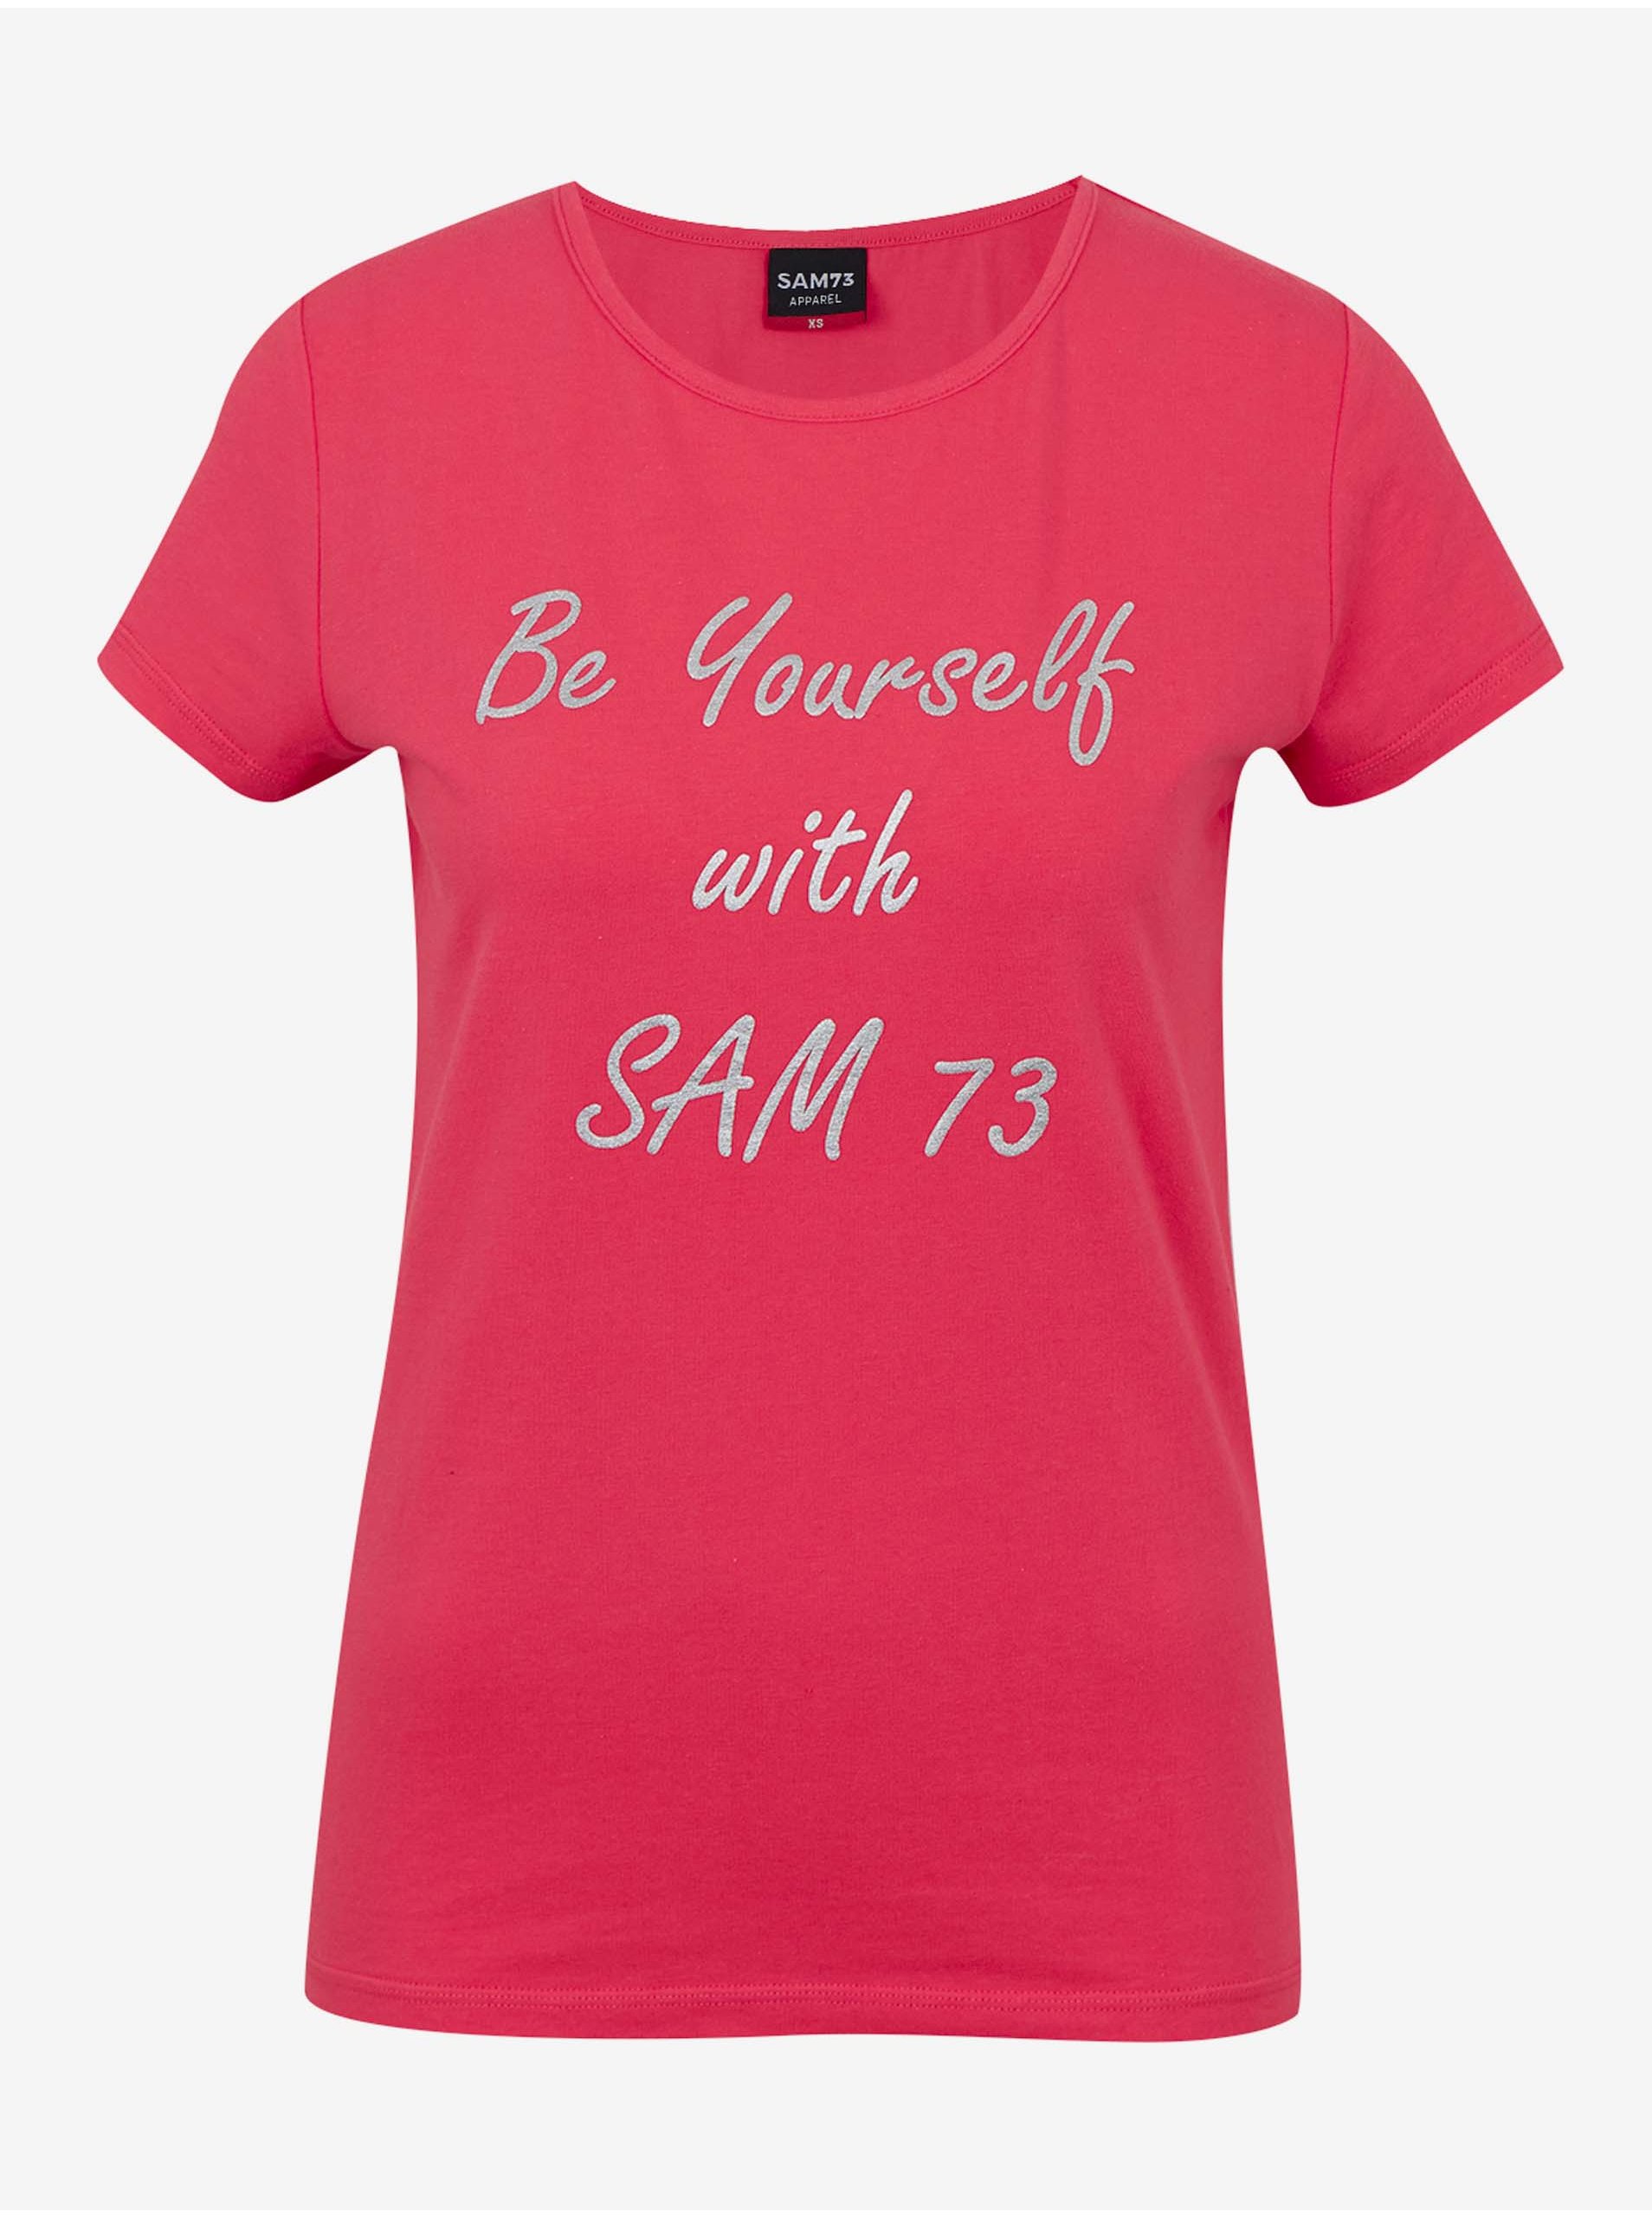 Lacno Tmavoružové dámske tričko SAM 73 Renee